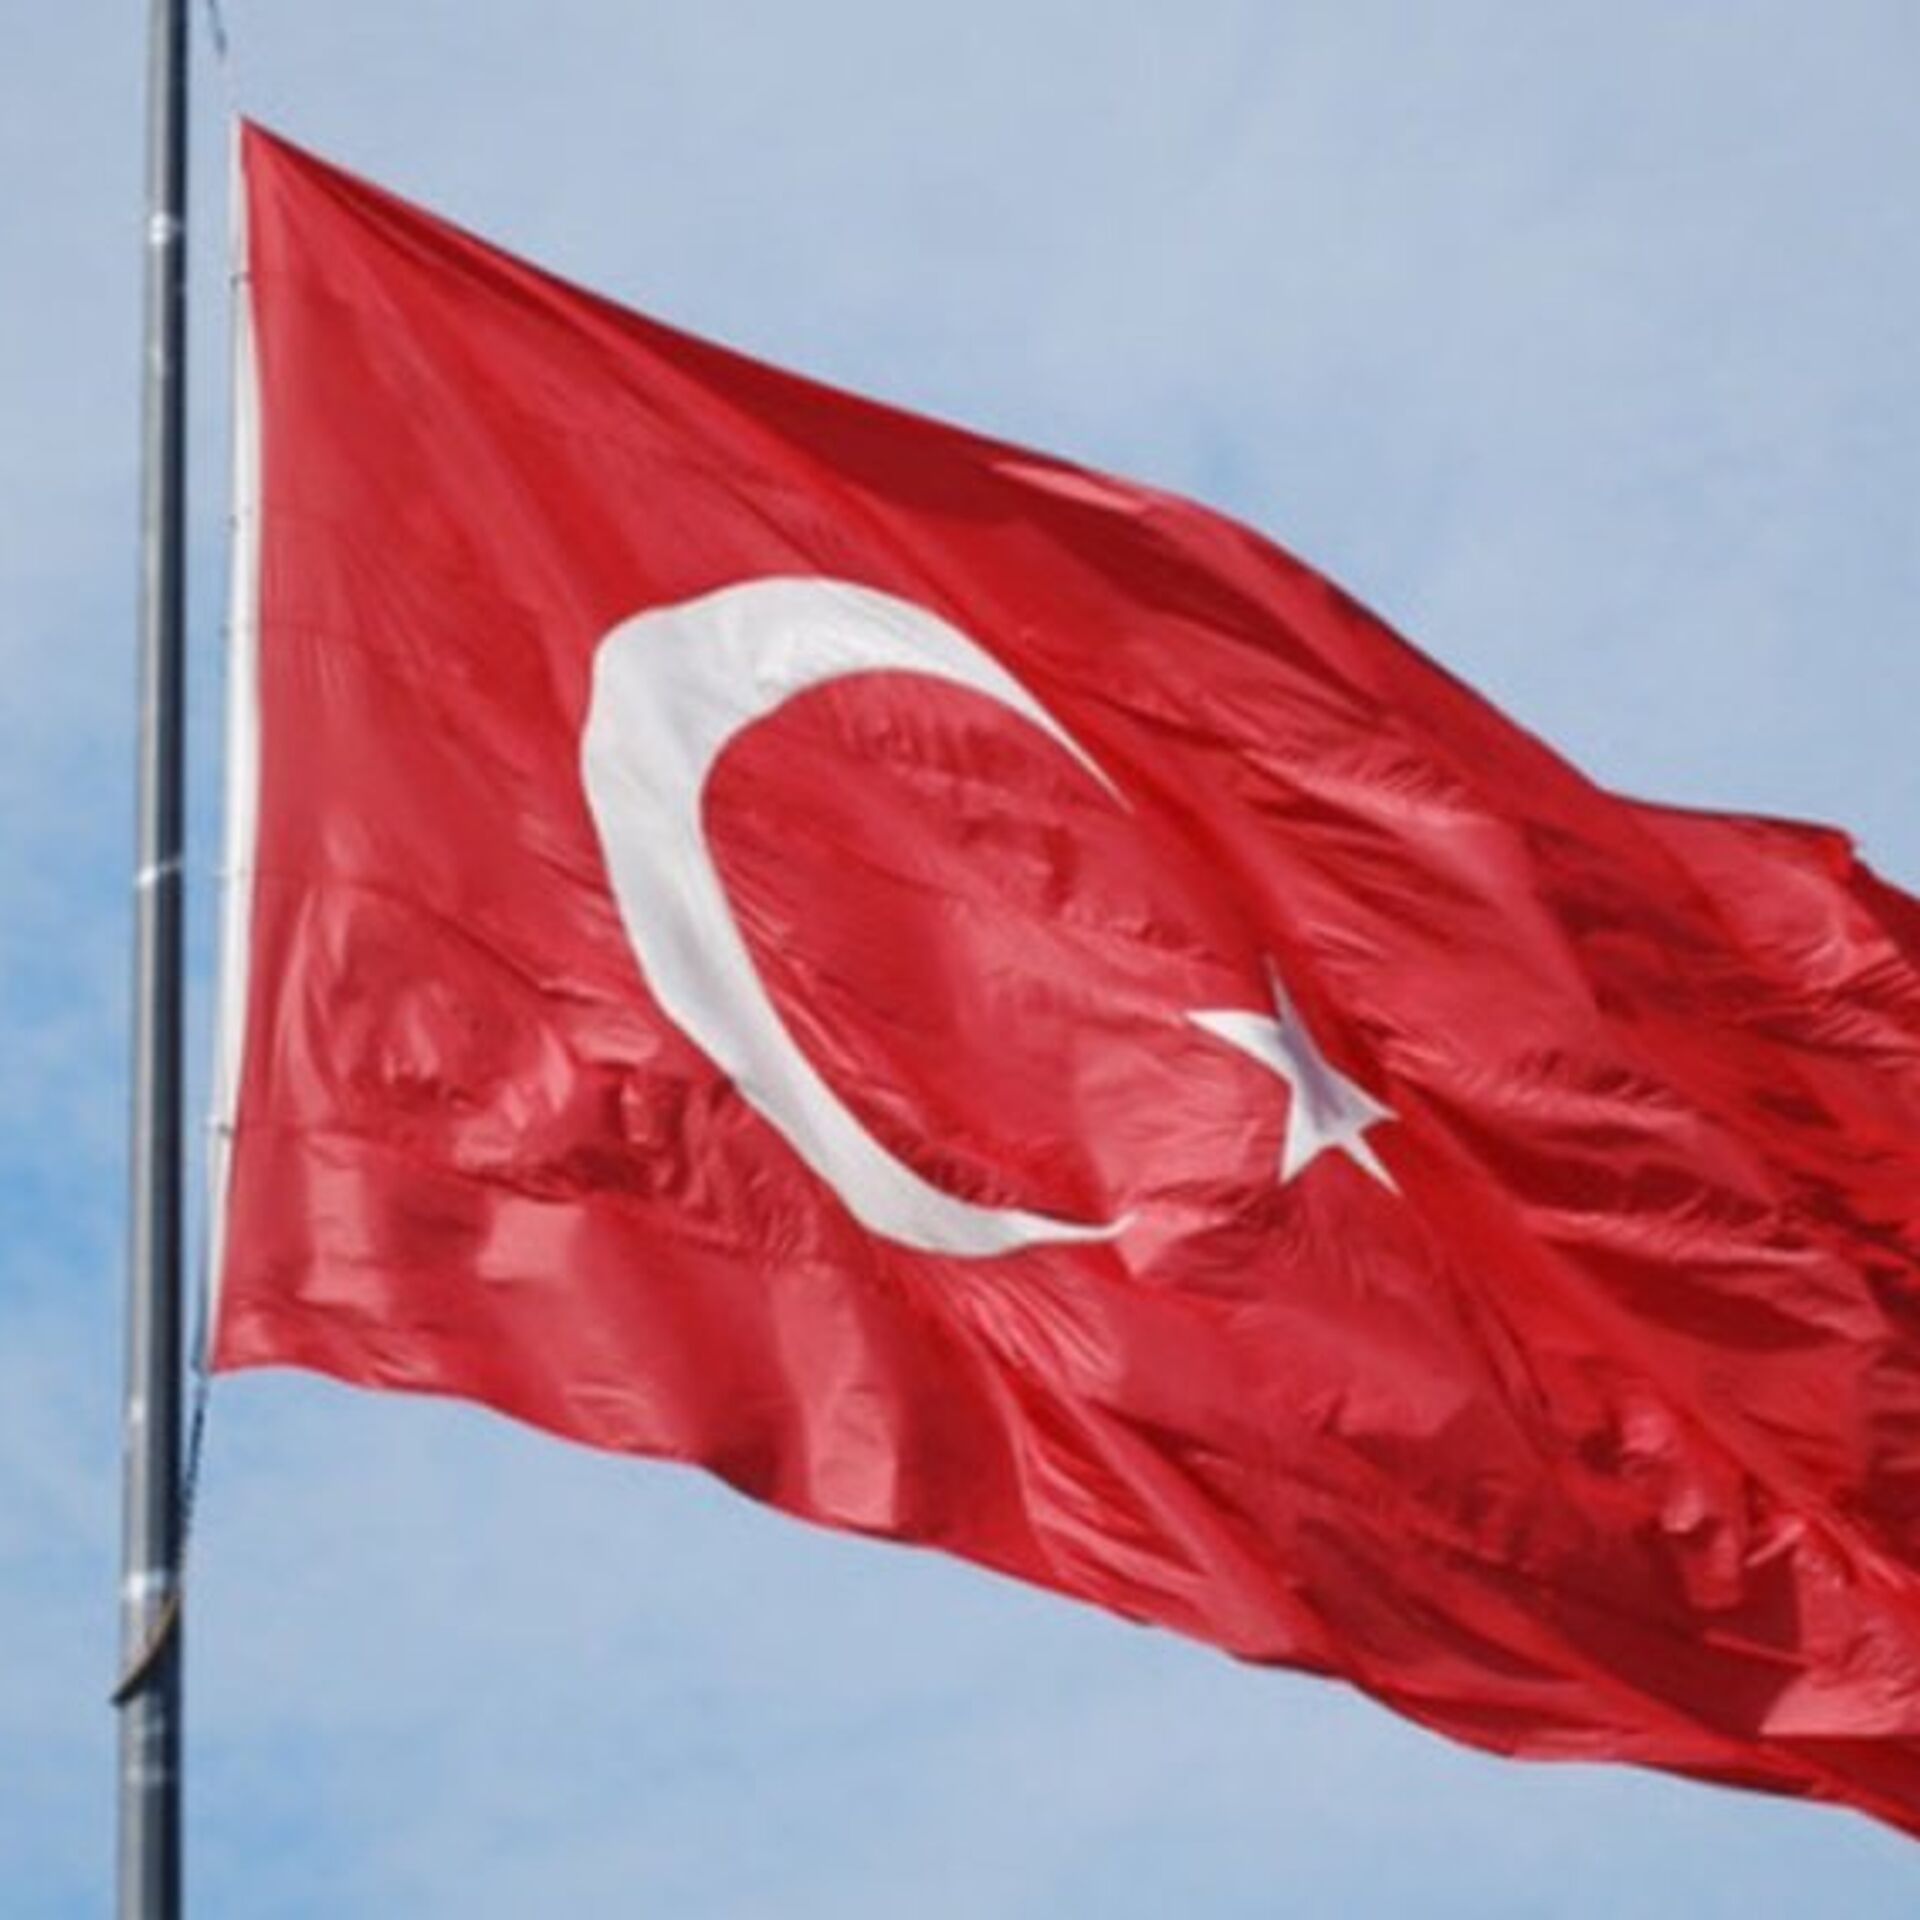 تركيا تدين إهانة علمها في ليبيا وتطالب باتخاذ إجراءات لمنع مثل هذه  